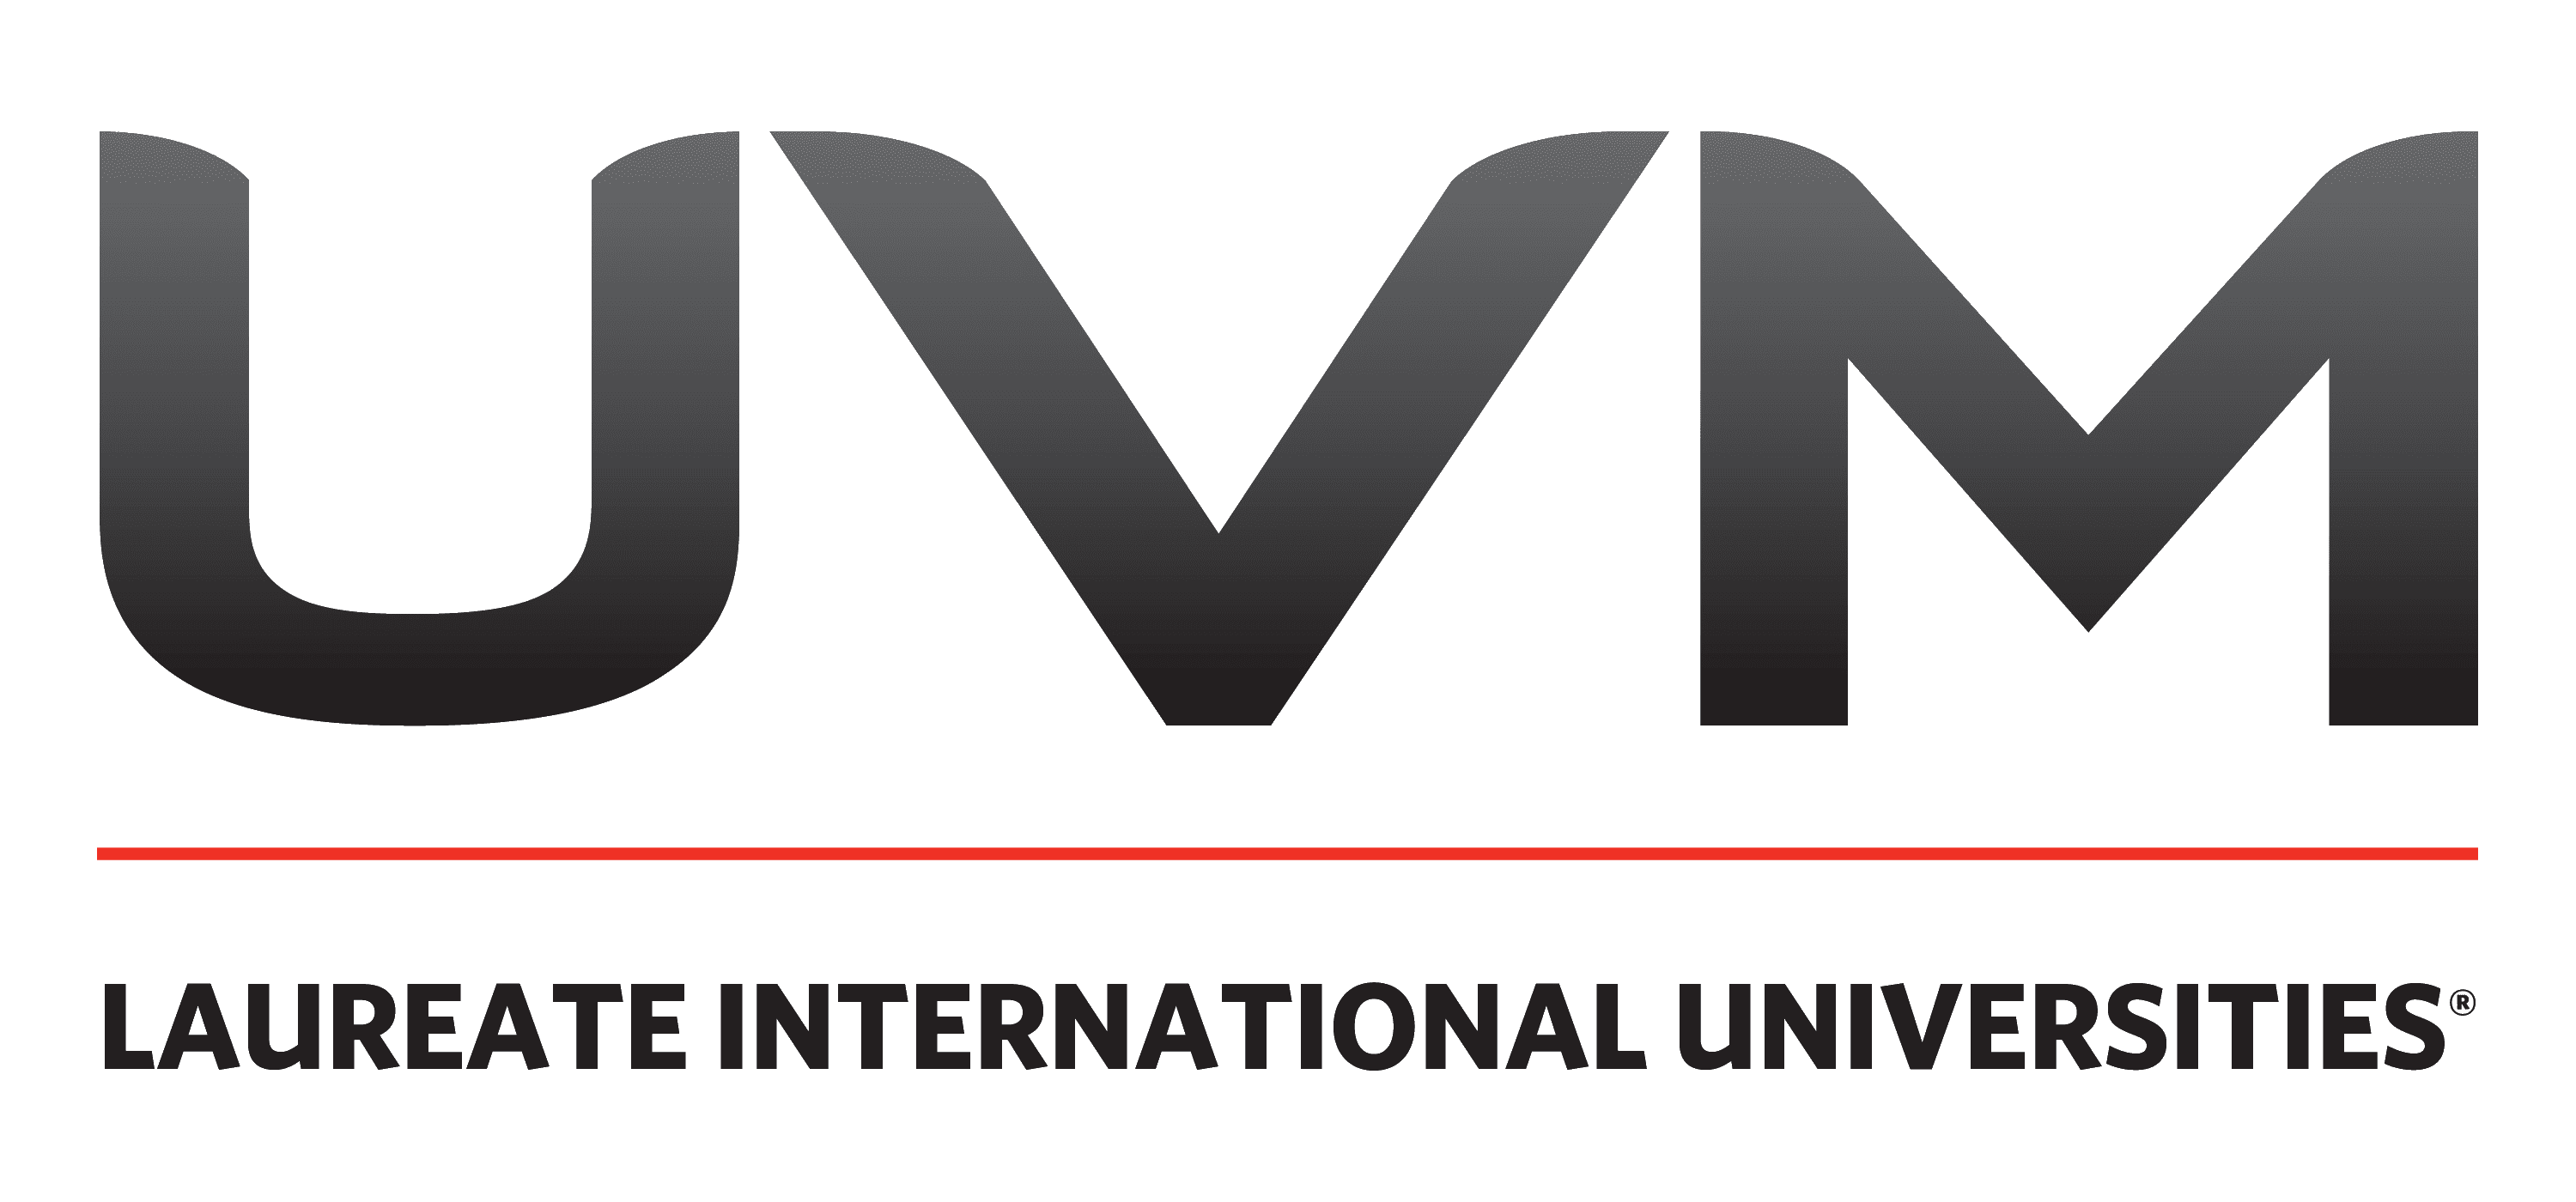 Universidad-Del-Valle-de-Mexico-logo-1